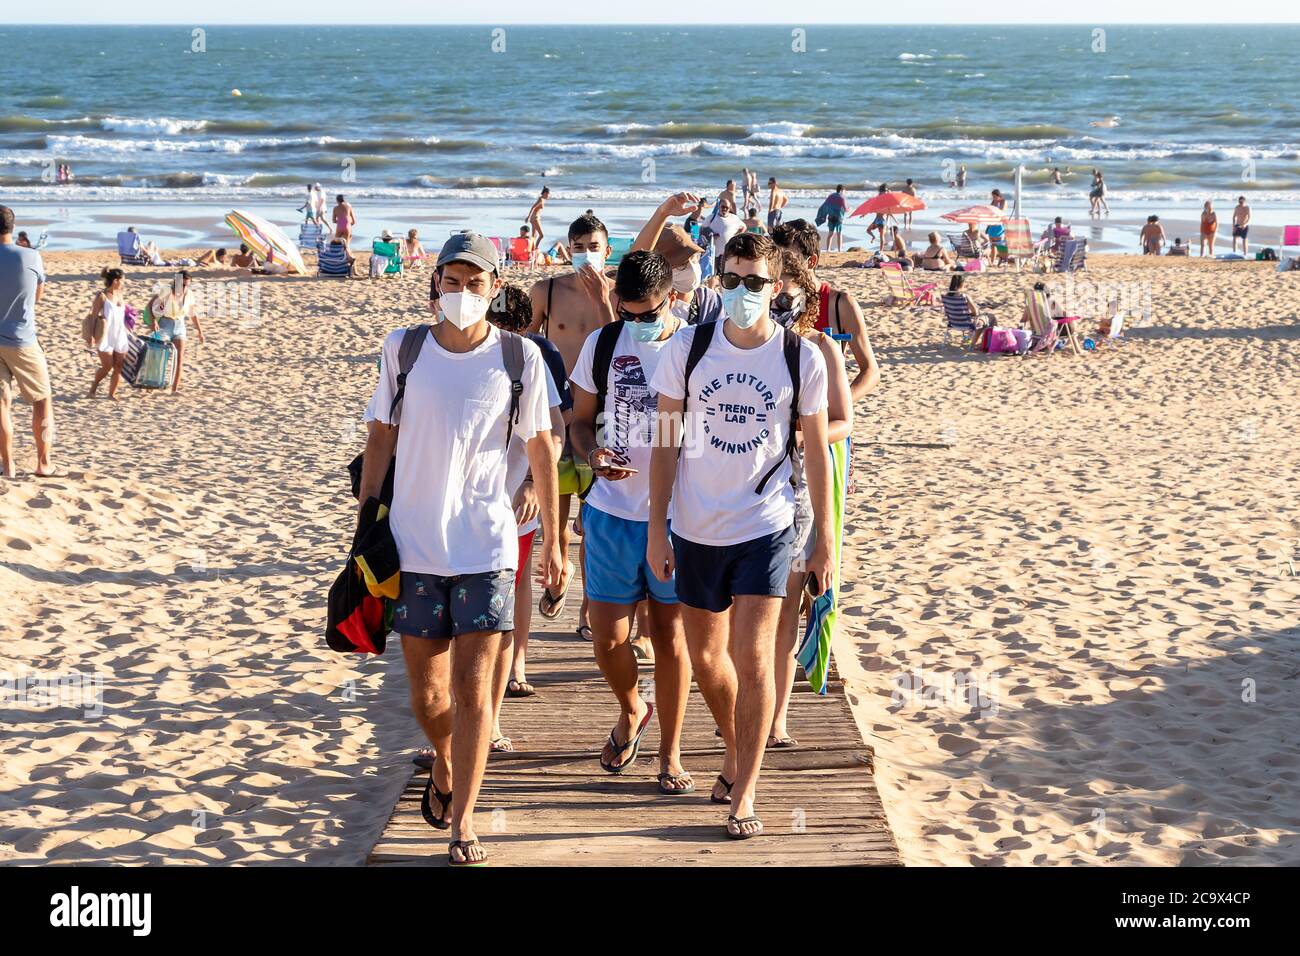 Punta Umbria, Huelva, Espagne - 2 août 2020: Les gens qui sortent de la plage portent des masques protecteurs ou médicaux. Nouvelle normale en Espagne avec social Banque D'Images